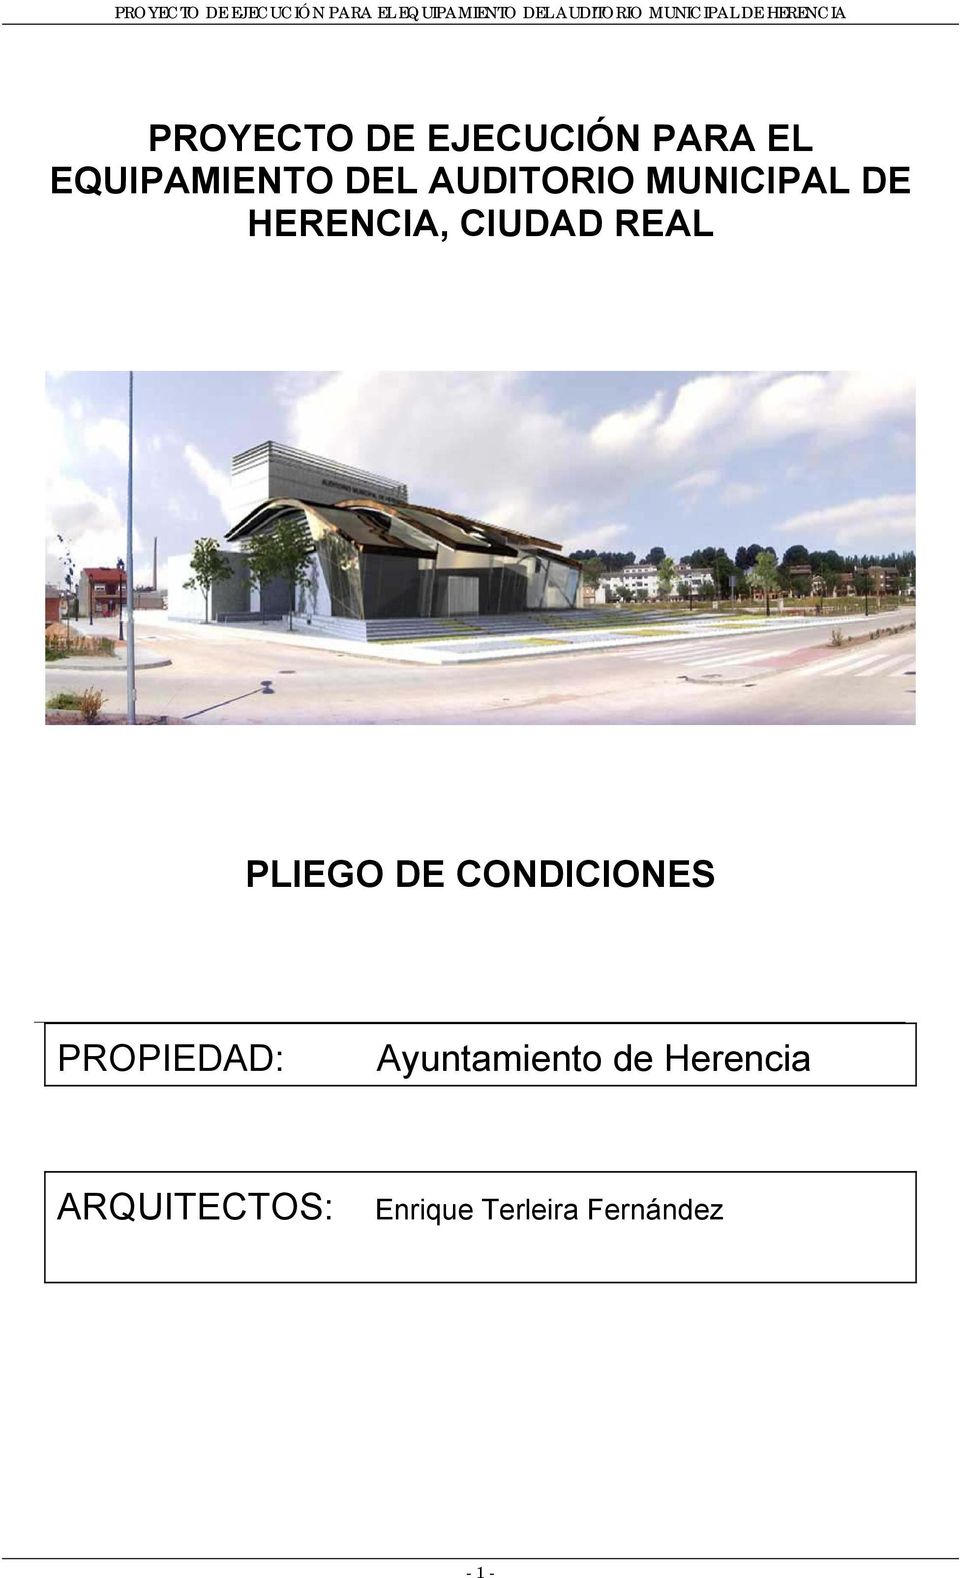 PLIEGO DE CONDICIONES PROPIEDAD: Ayuntamiento de